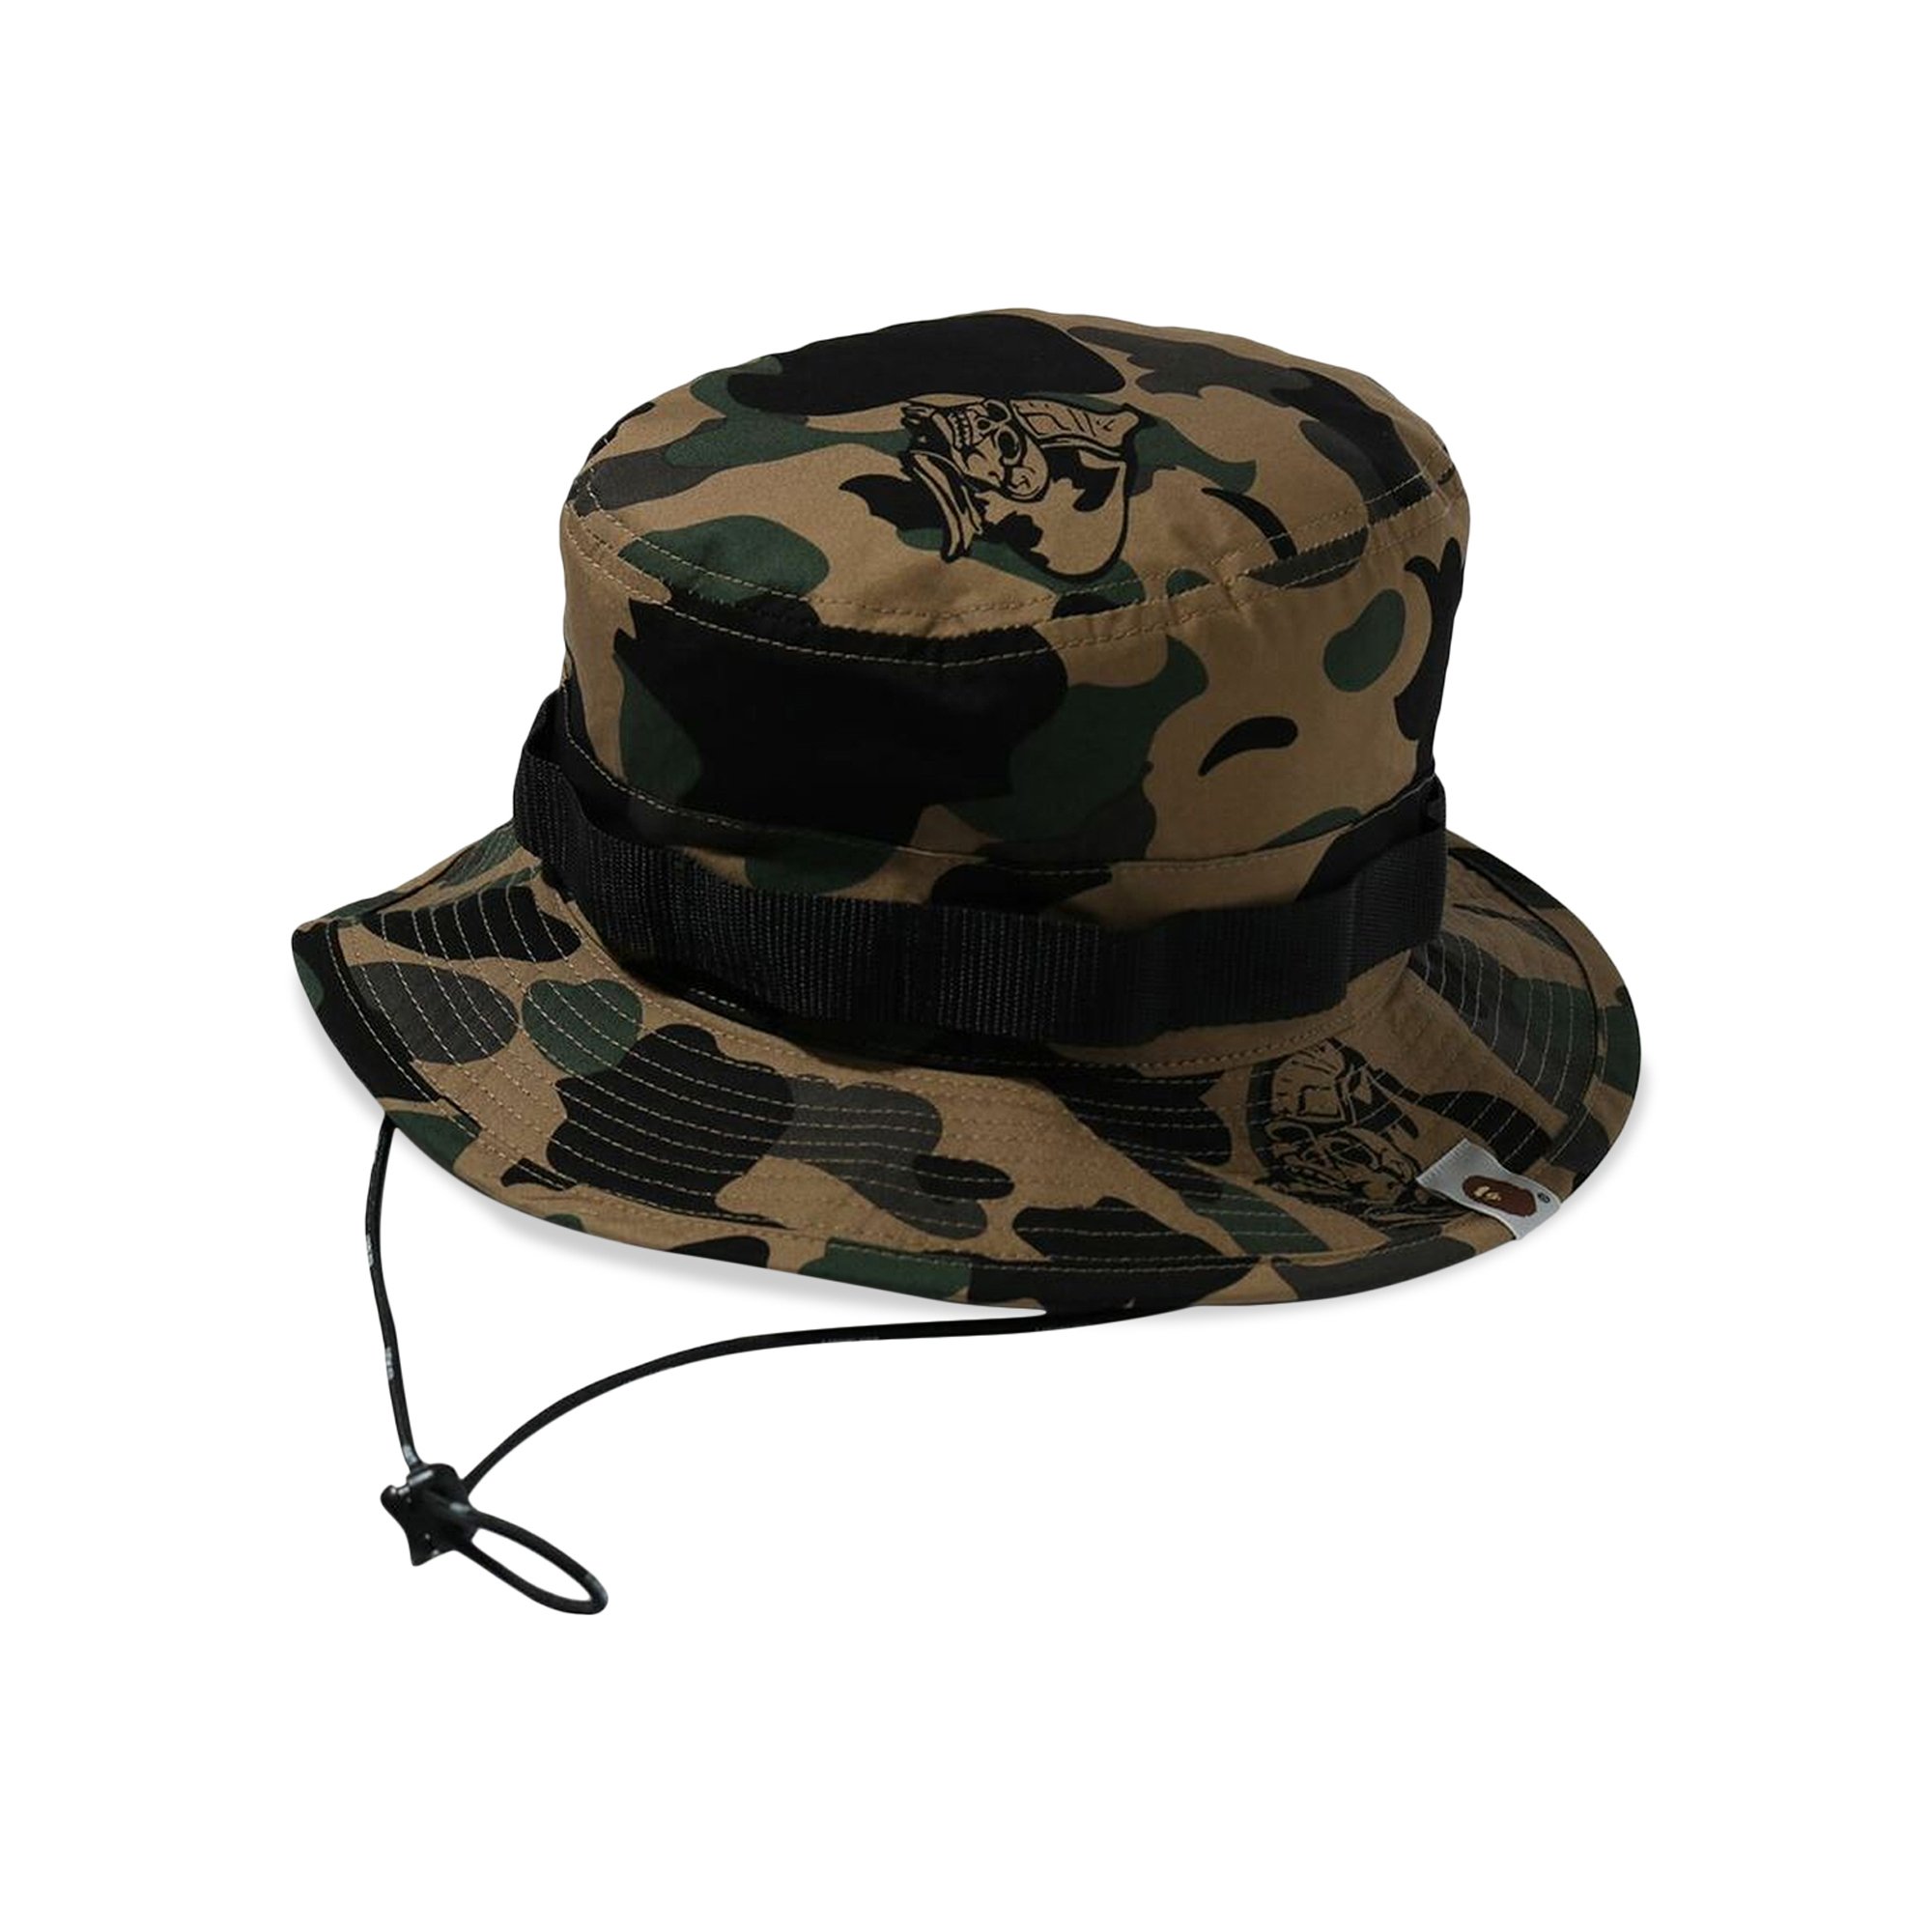 Buy BAPE Ursus Camo Military Hat 'Olive' - 1H20 180 002 OLIVE | GOAT